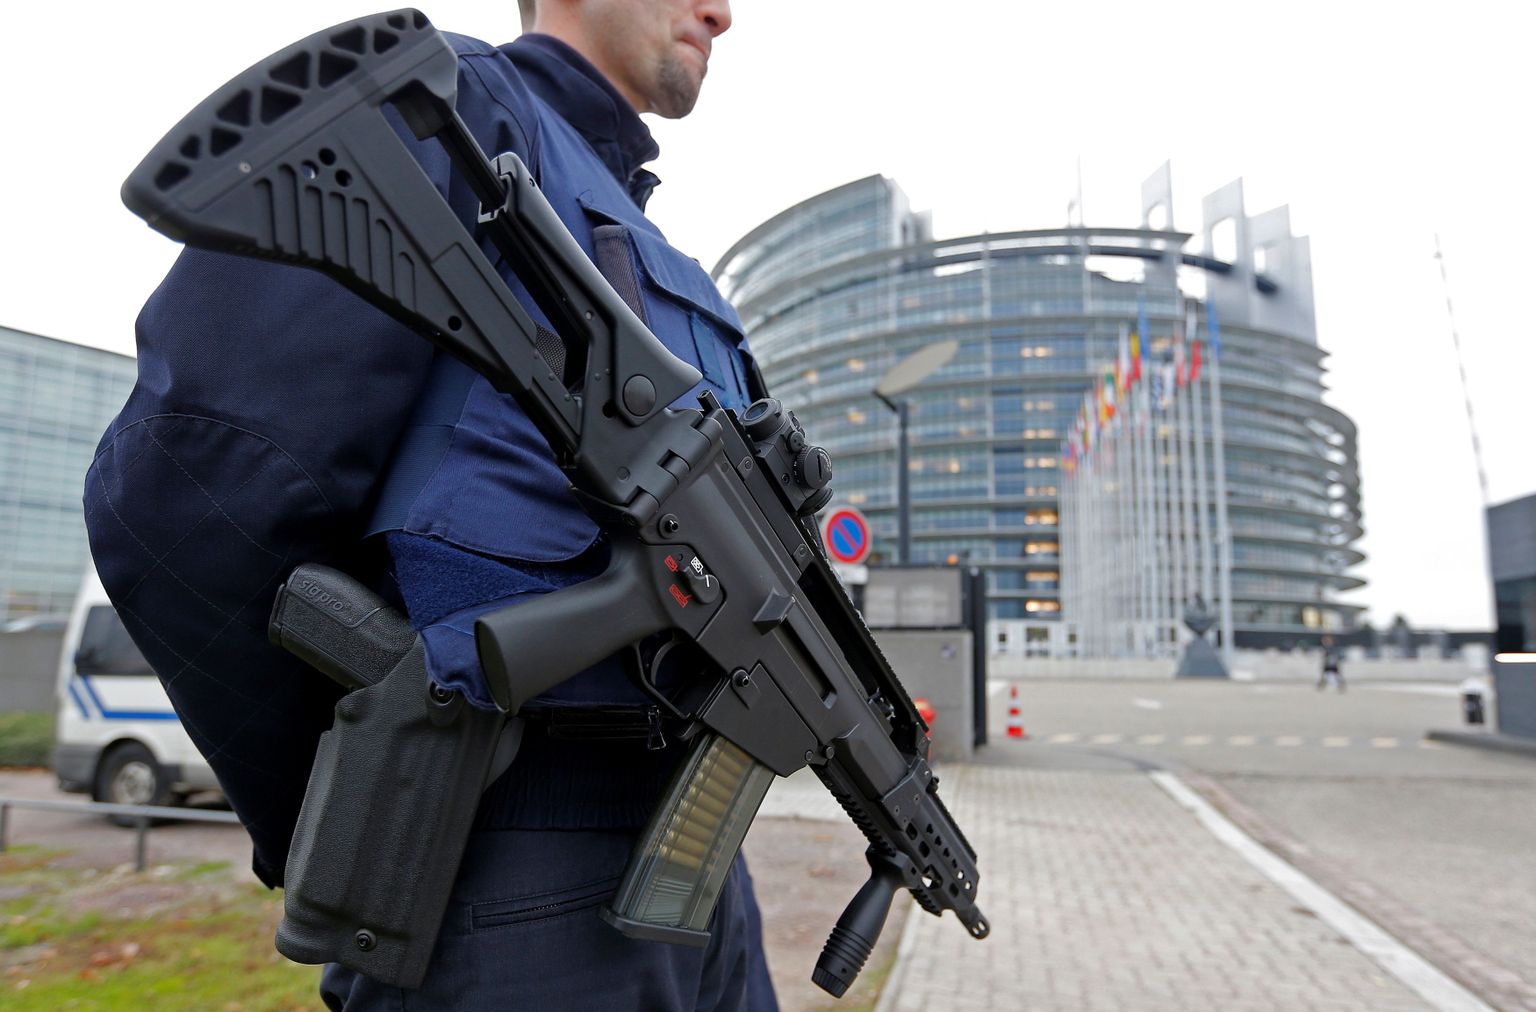 Prantsuse politseinik Strasbourgis Euroopa Parlamendi maja valvamas.